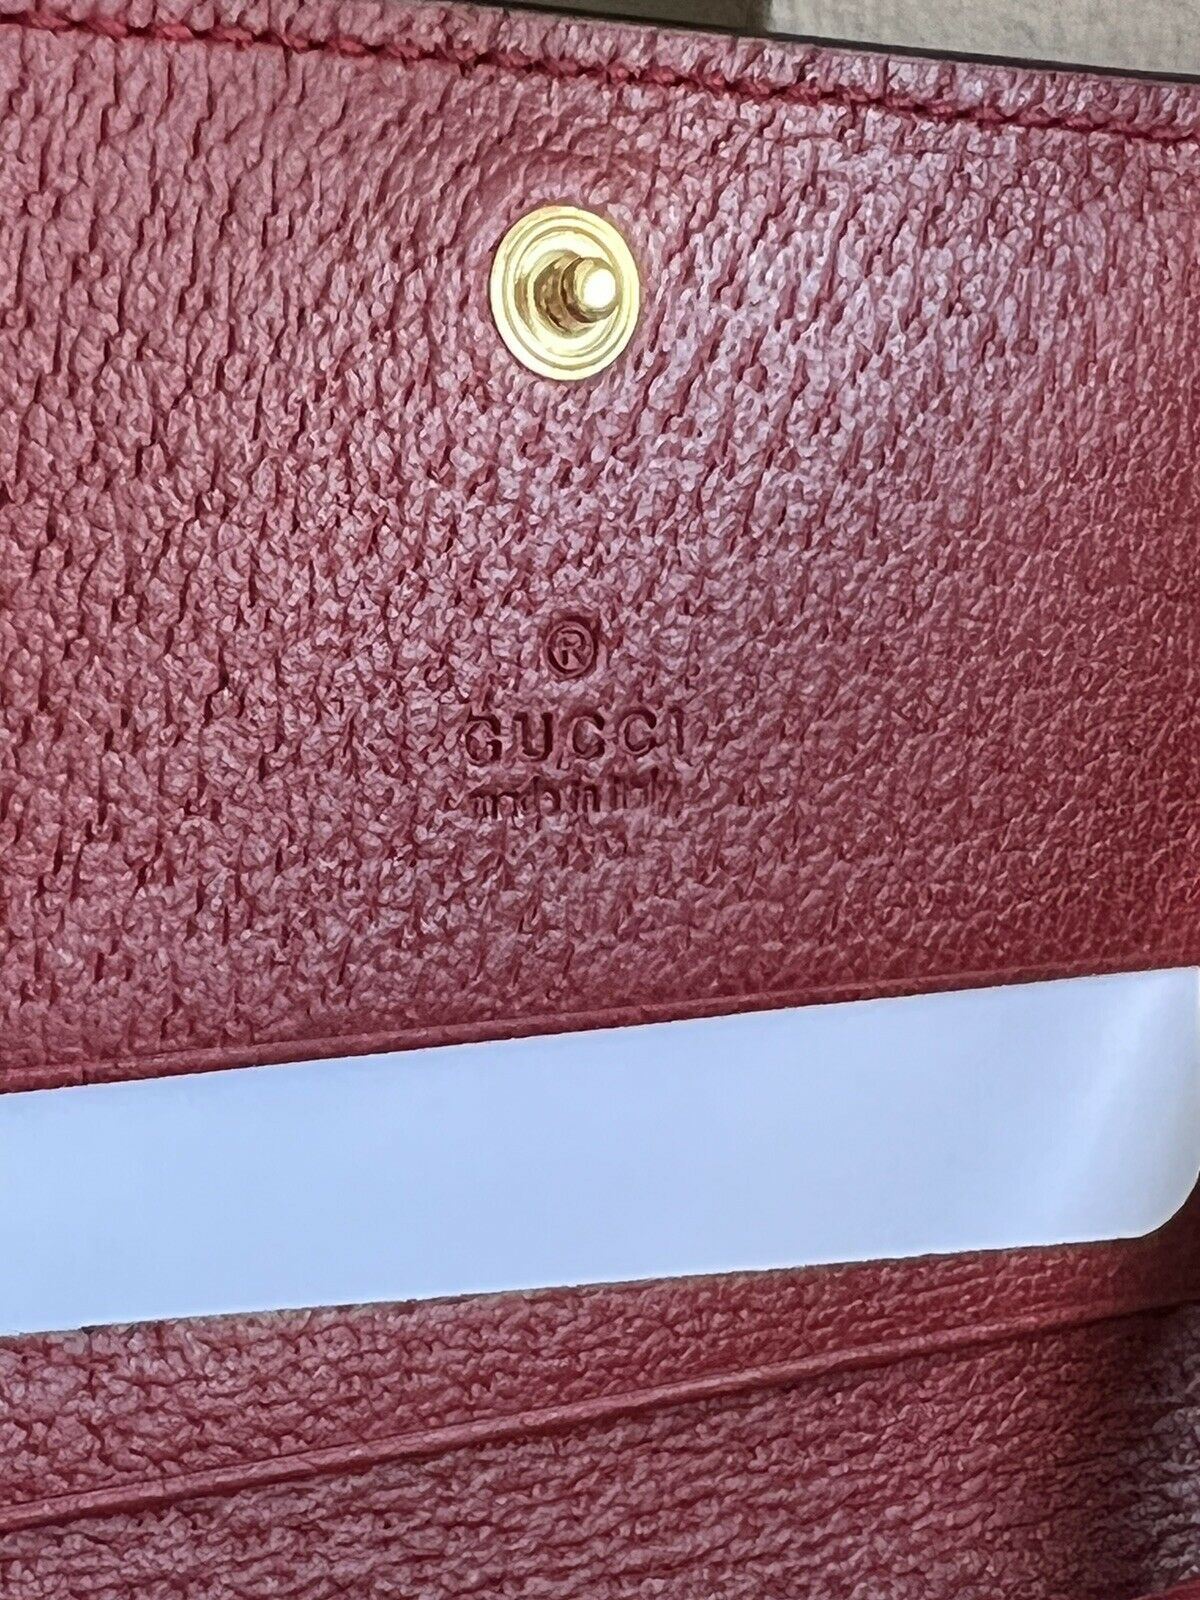 NWT Gucci GG Ophidia Красный бумажник из холщовой ткани с покрытием и цветочным принтом 523155 